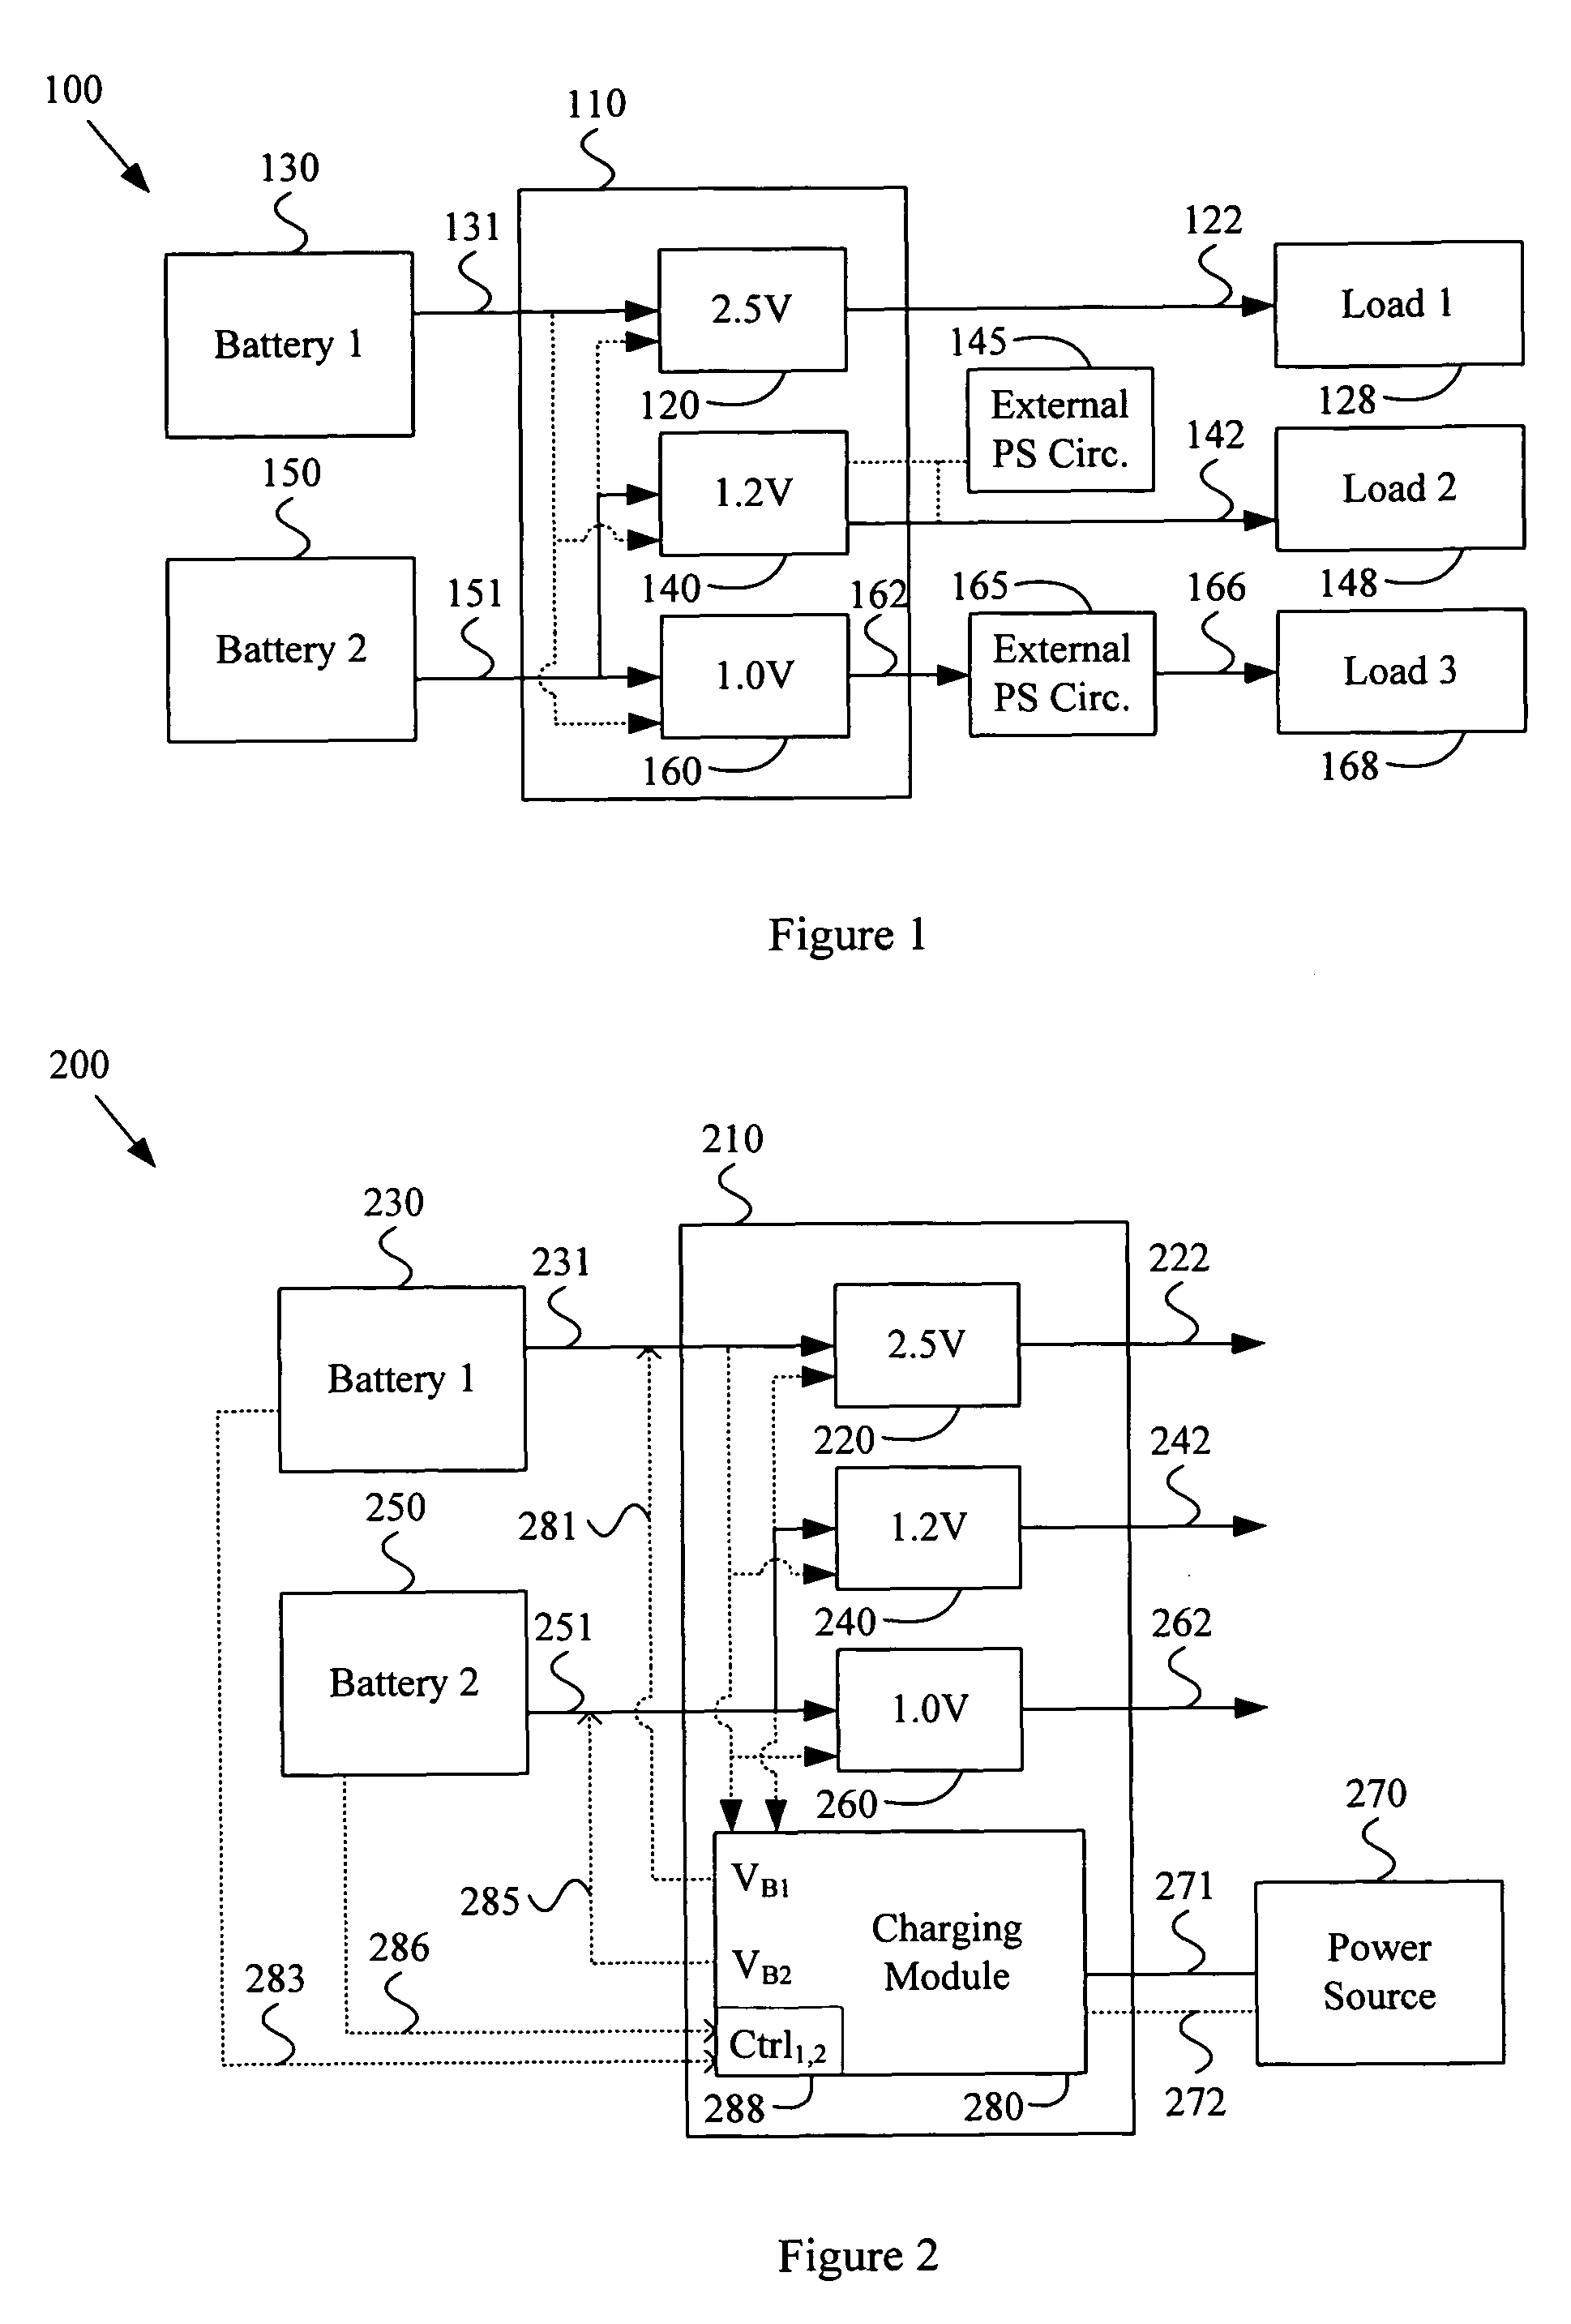 Multi-voltage multi-battery power management unit